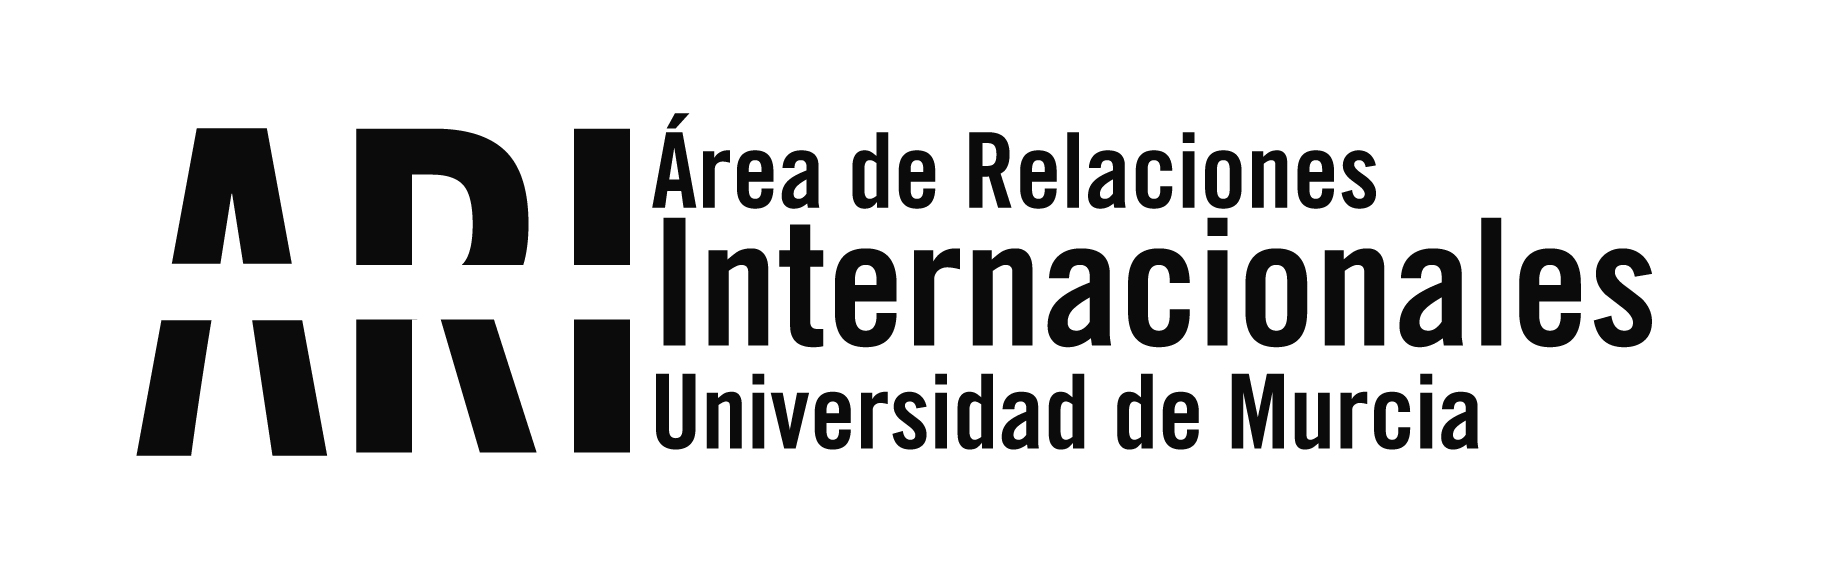 La UMU participa en las XVIII Jornadas de la CRUE sobre Internacionalización y Cooperación - Área de Relaciones Internacionales